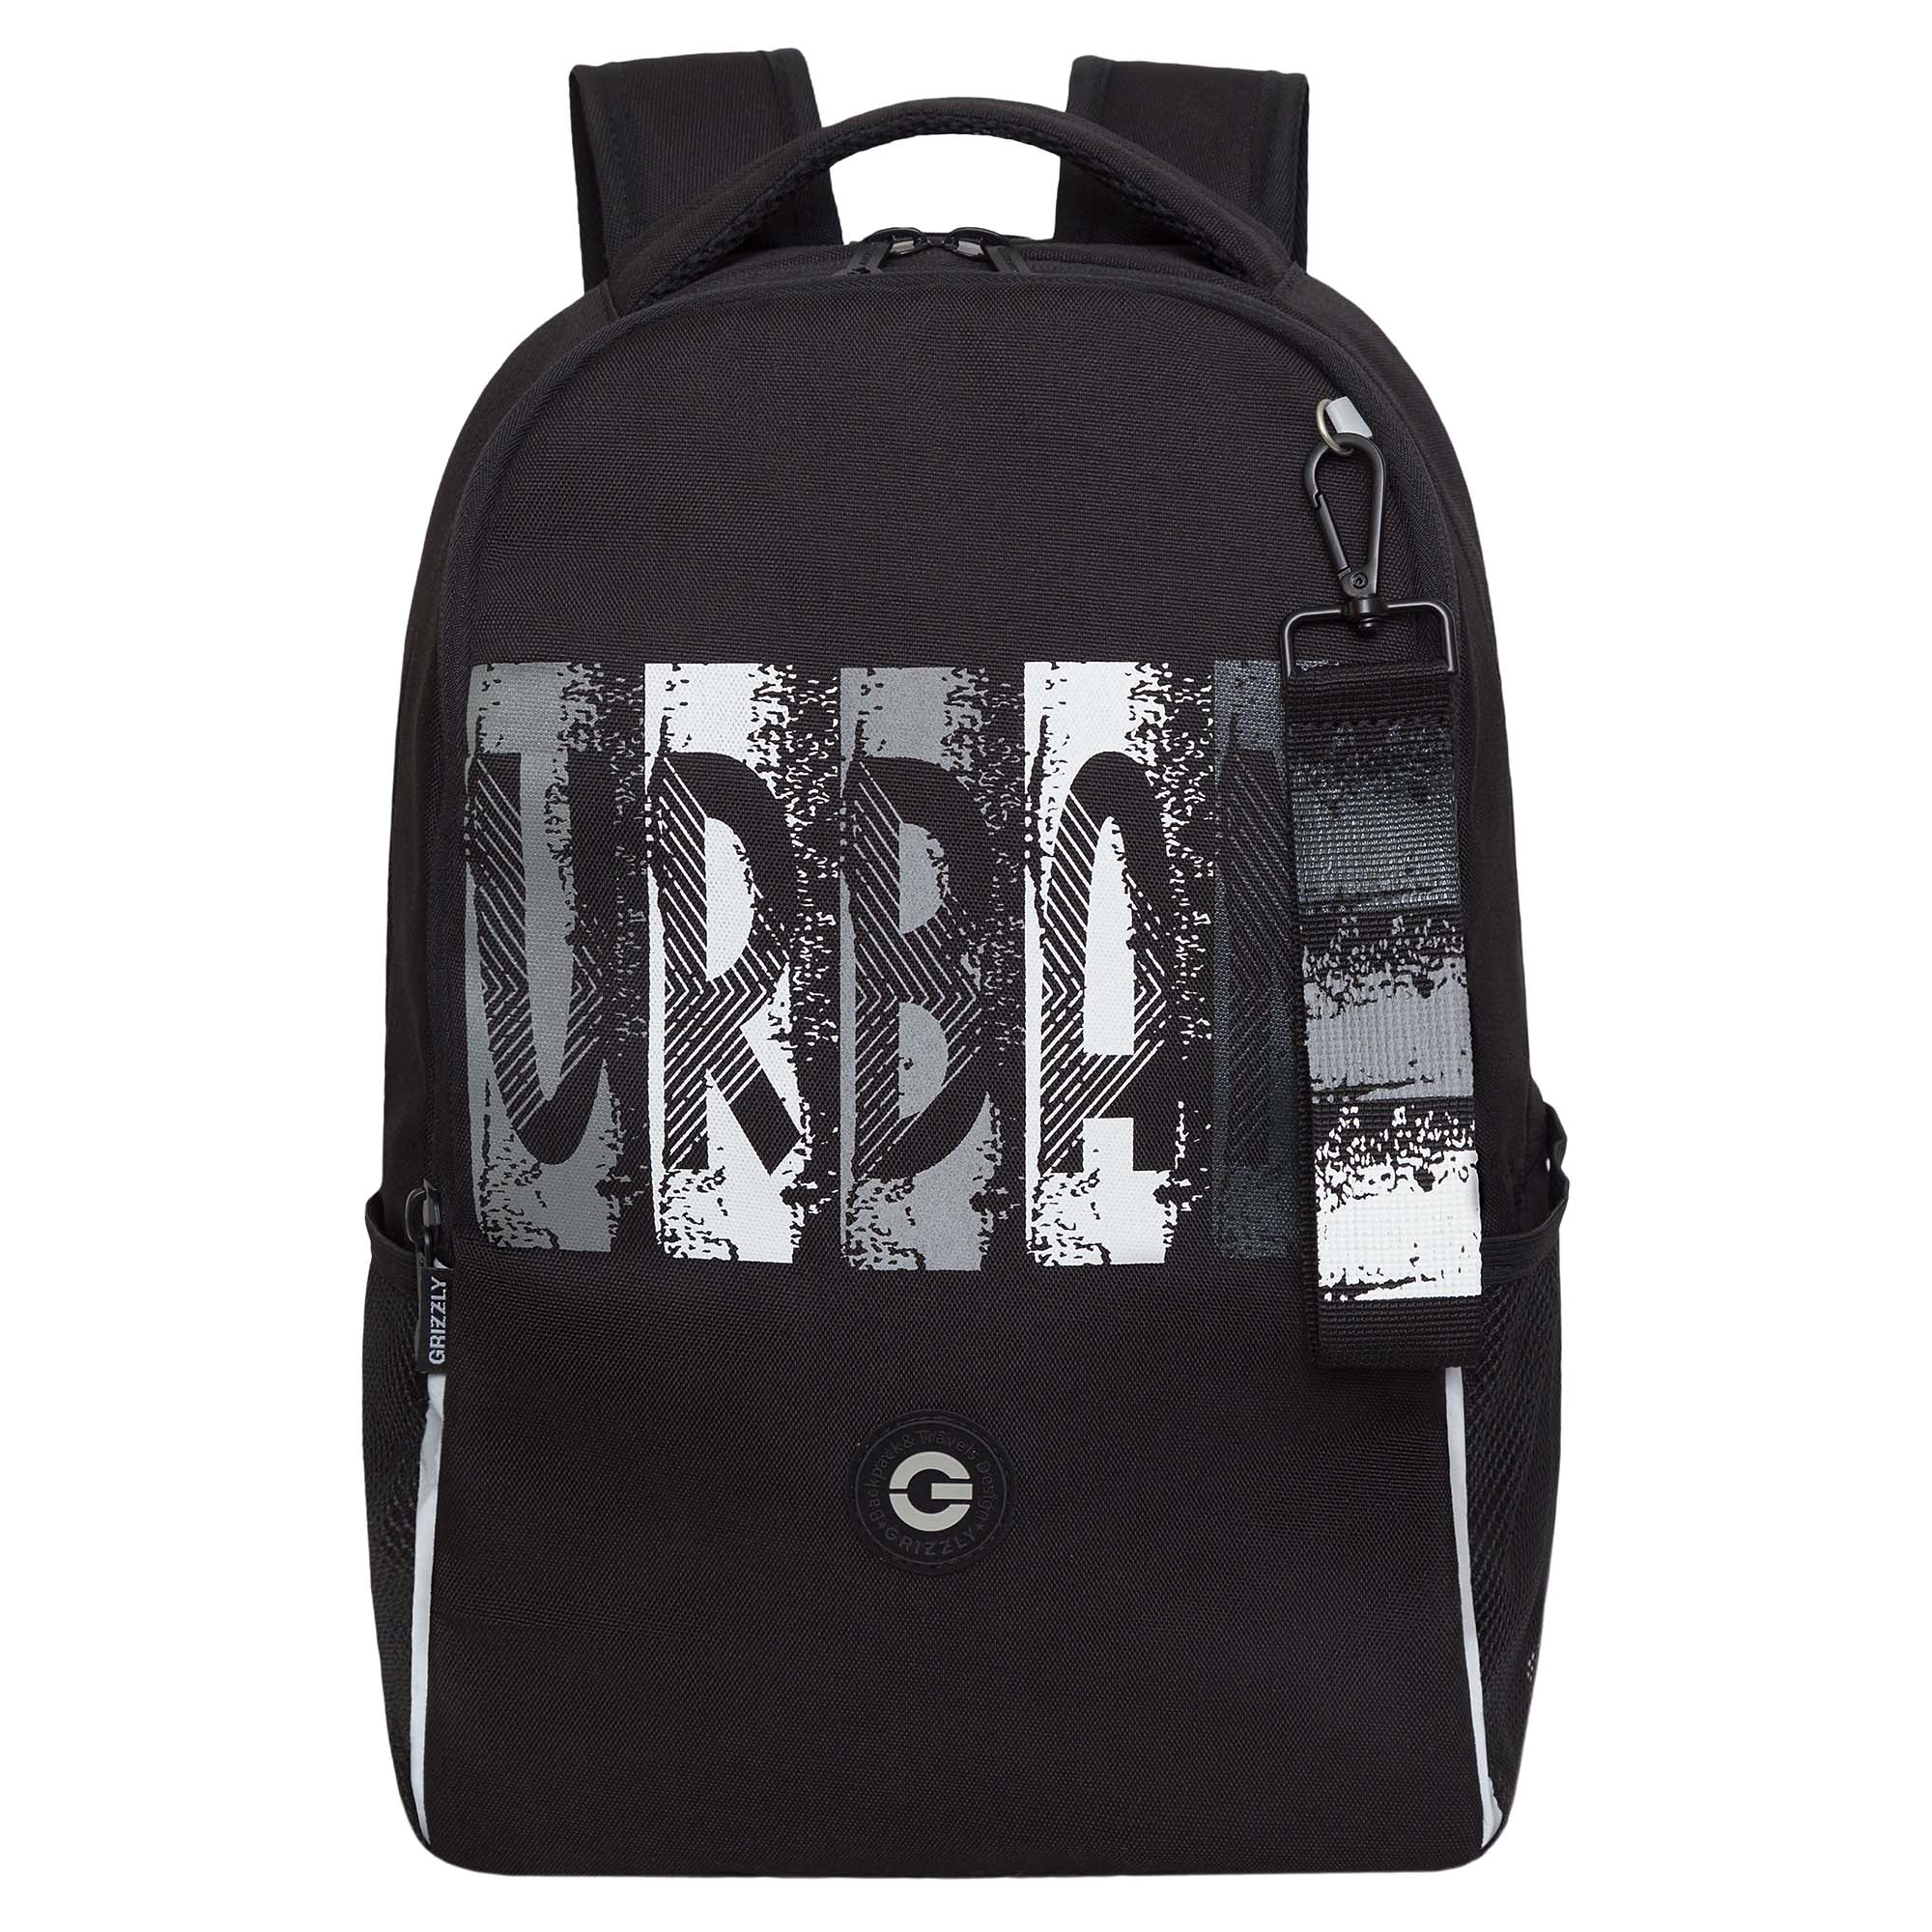 Рюкзак школьный GRIZZLY легкий с жесткой спинкой, 2 отделения, черный; серый, RB-451-3/2 рюкзак школьный grizzly с карманом для ноутбука 13 2 отделения для девочки rg 466 3 2